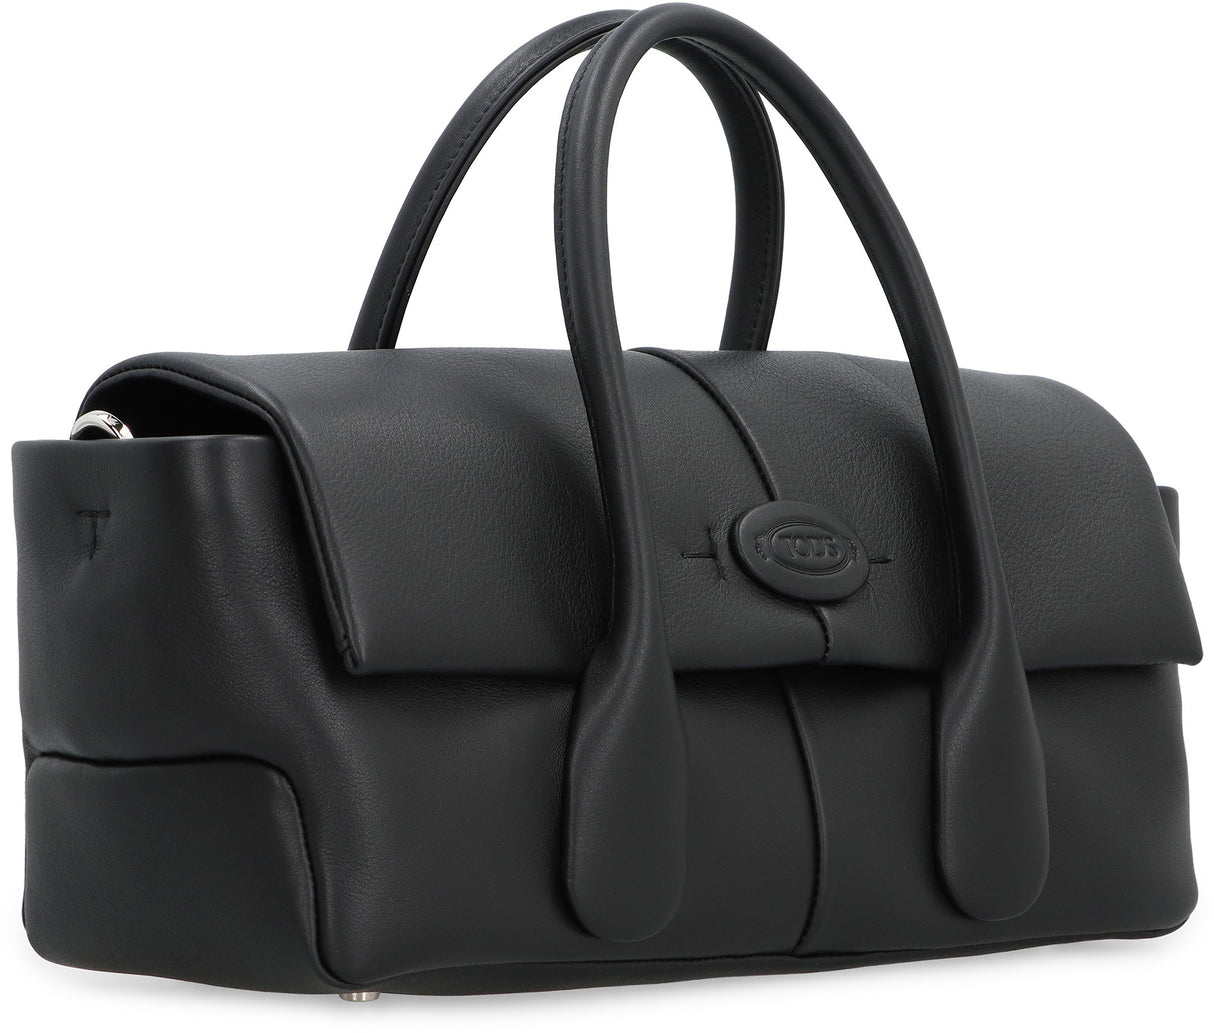 TOD'S Black Leather Handbag for Women | Zippered Closure | Adjustable Shoulder Strap